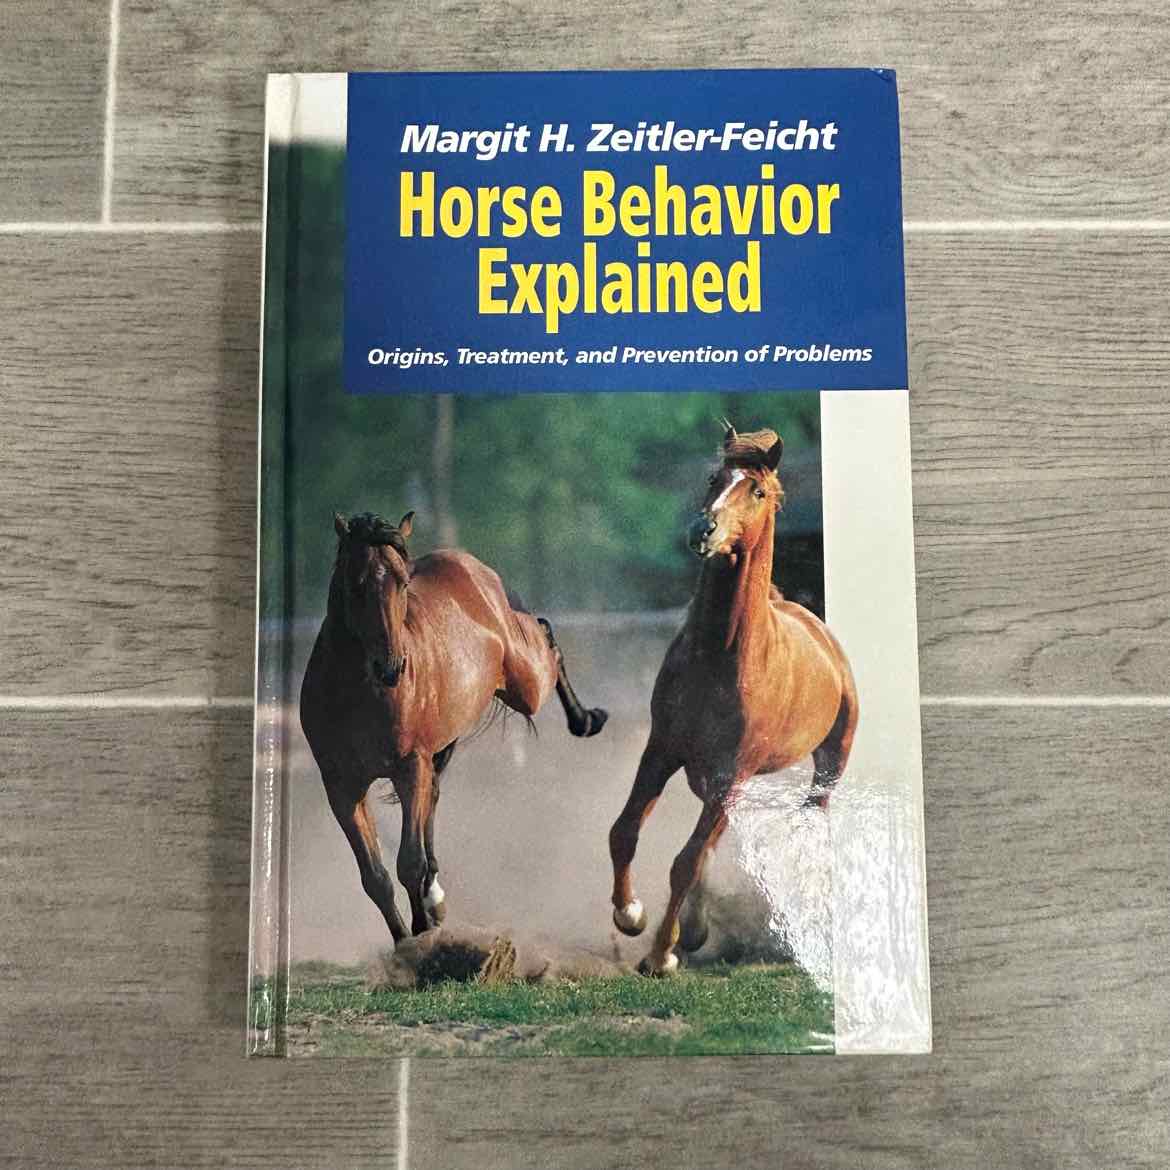 Horse Behavior Explained by Margit H. Zeitler-Feicht